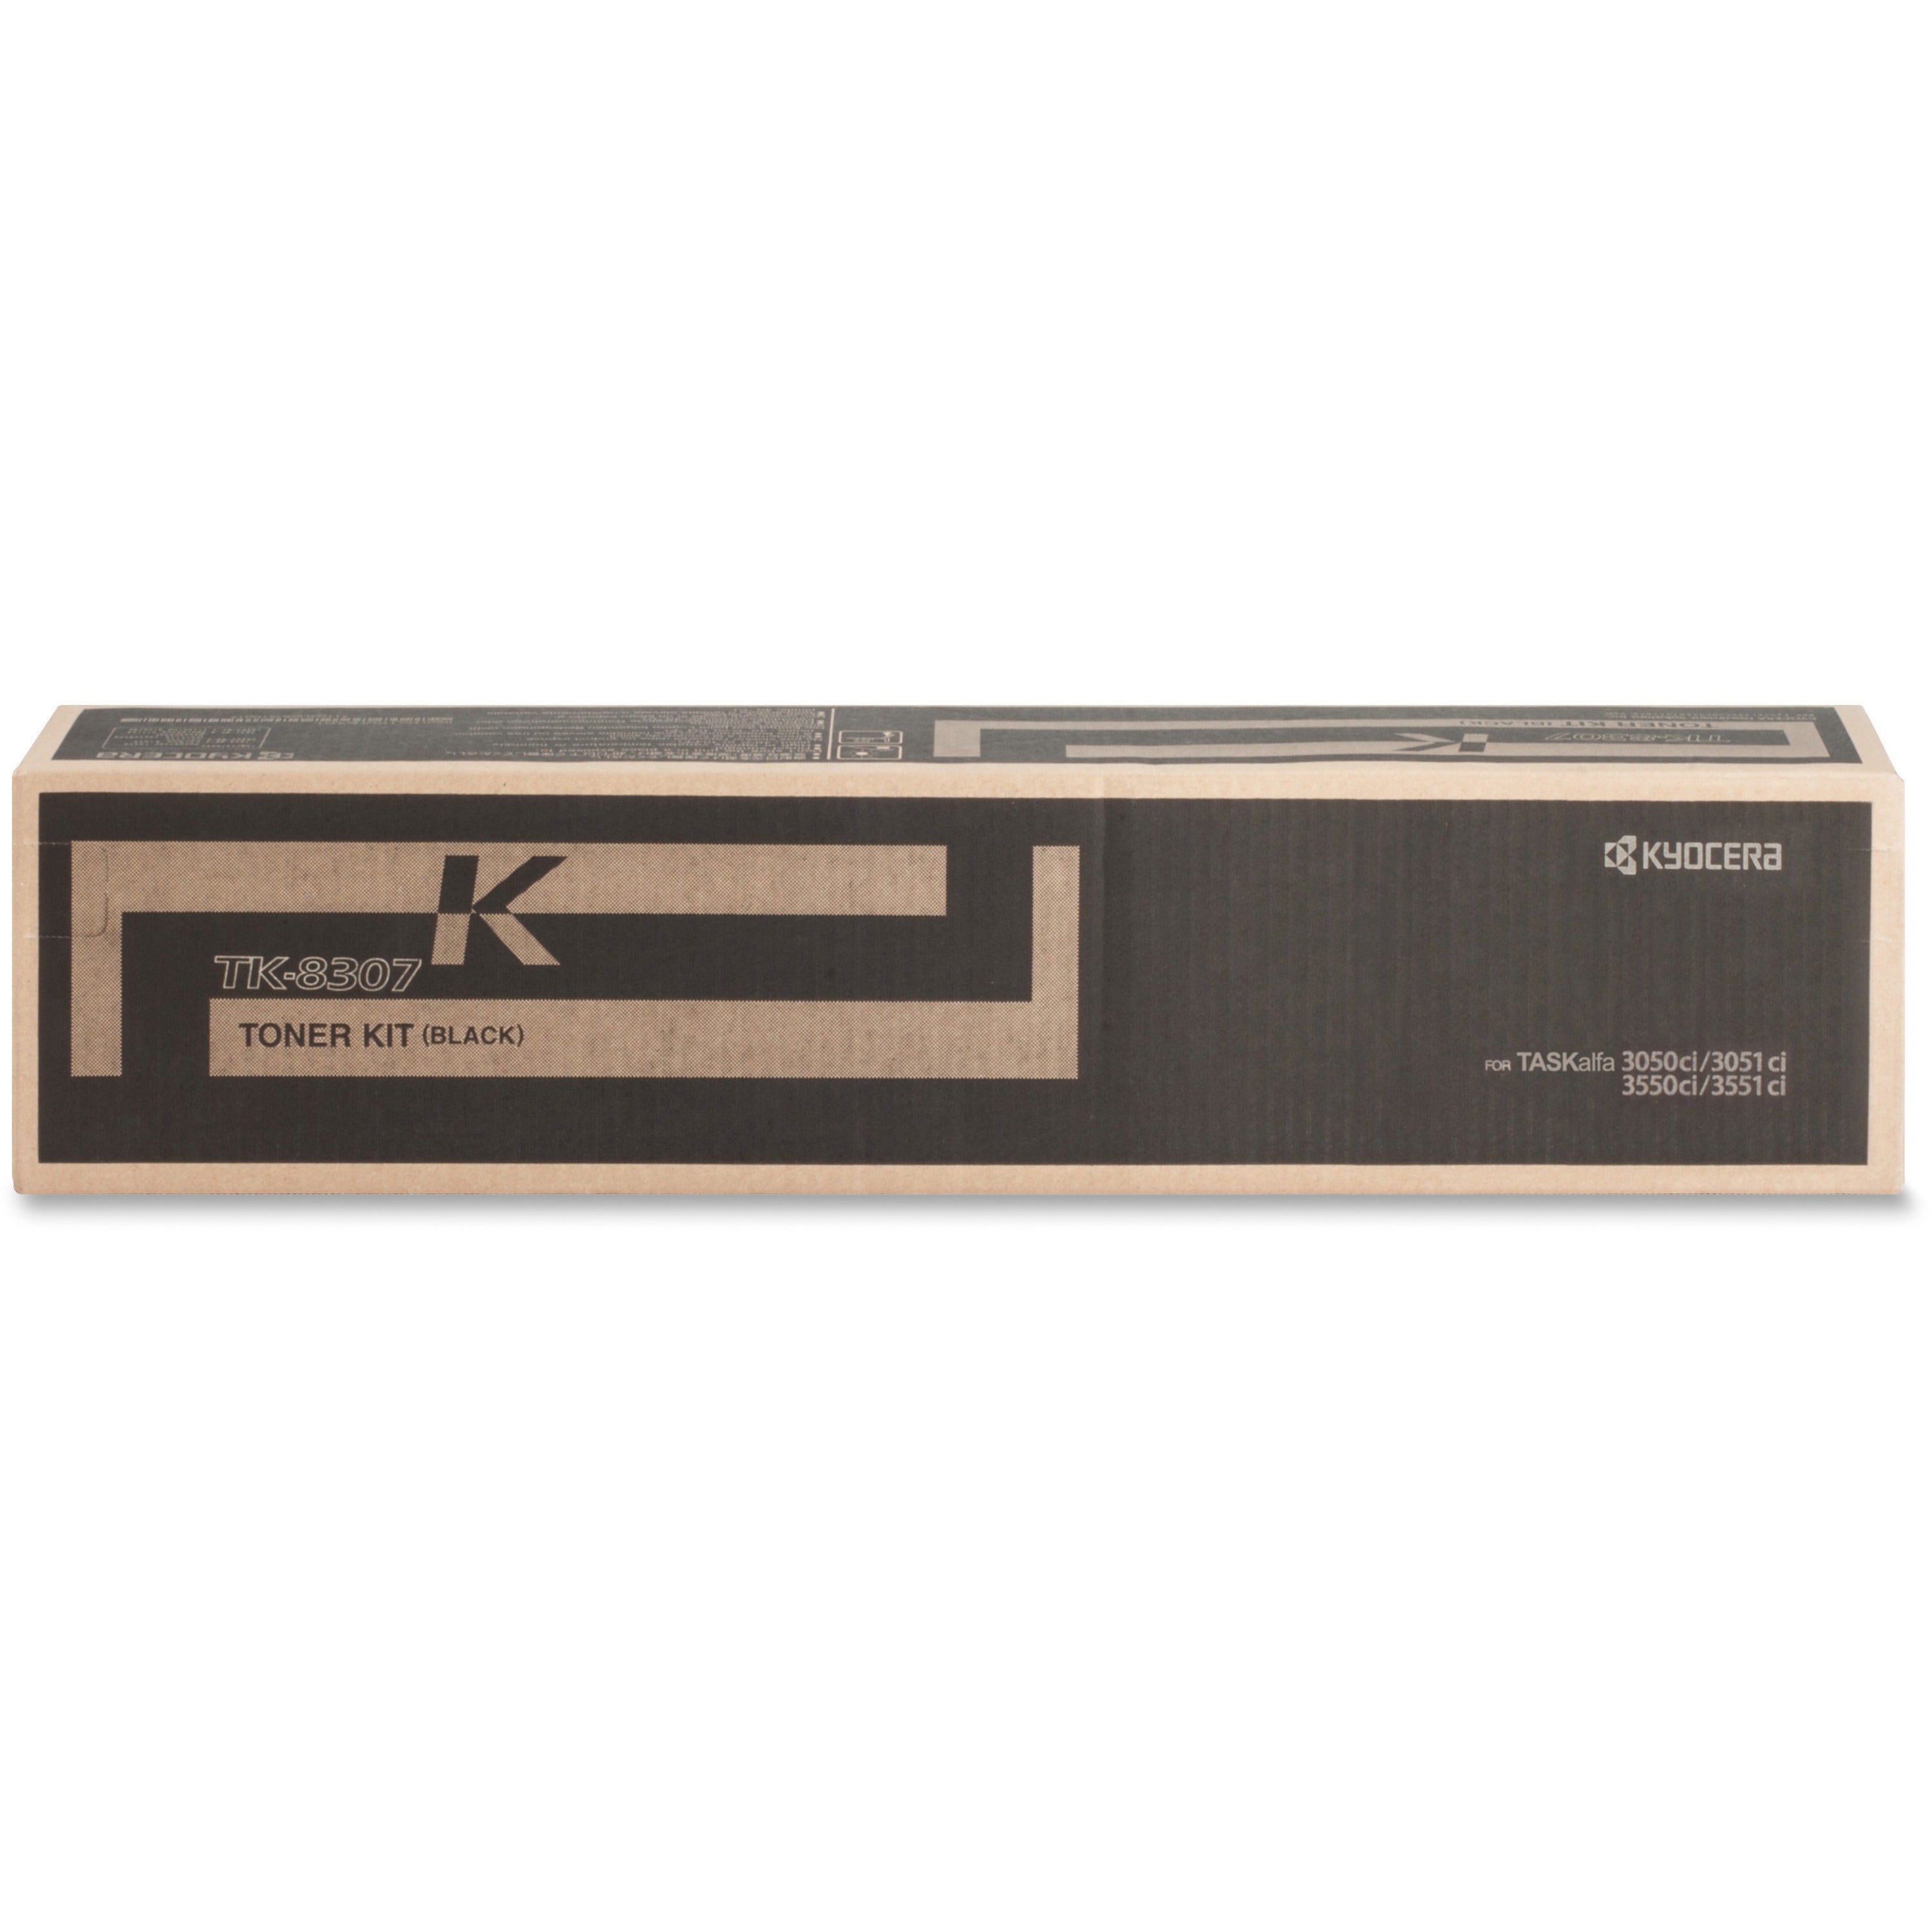 Kyocera Original Toner Cartridge - Laser - 25000 Pages - Black - 1 Each - 